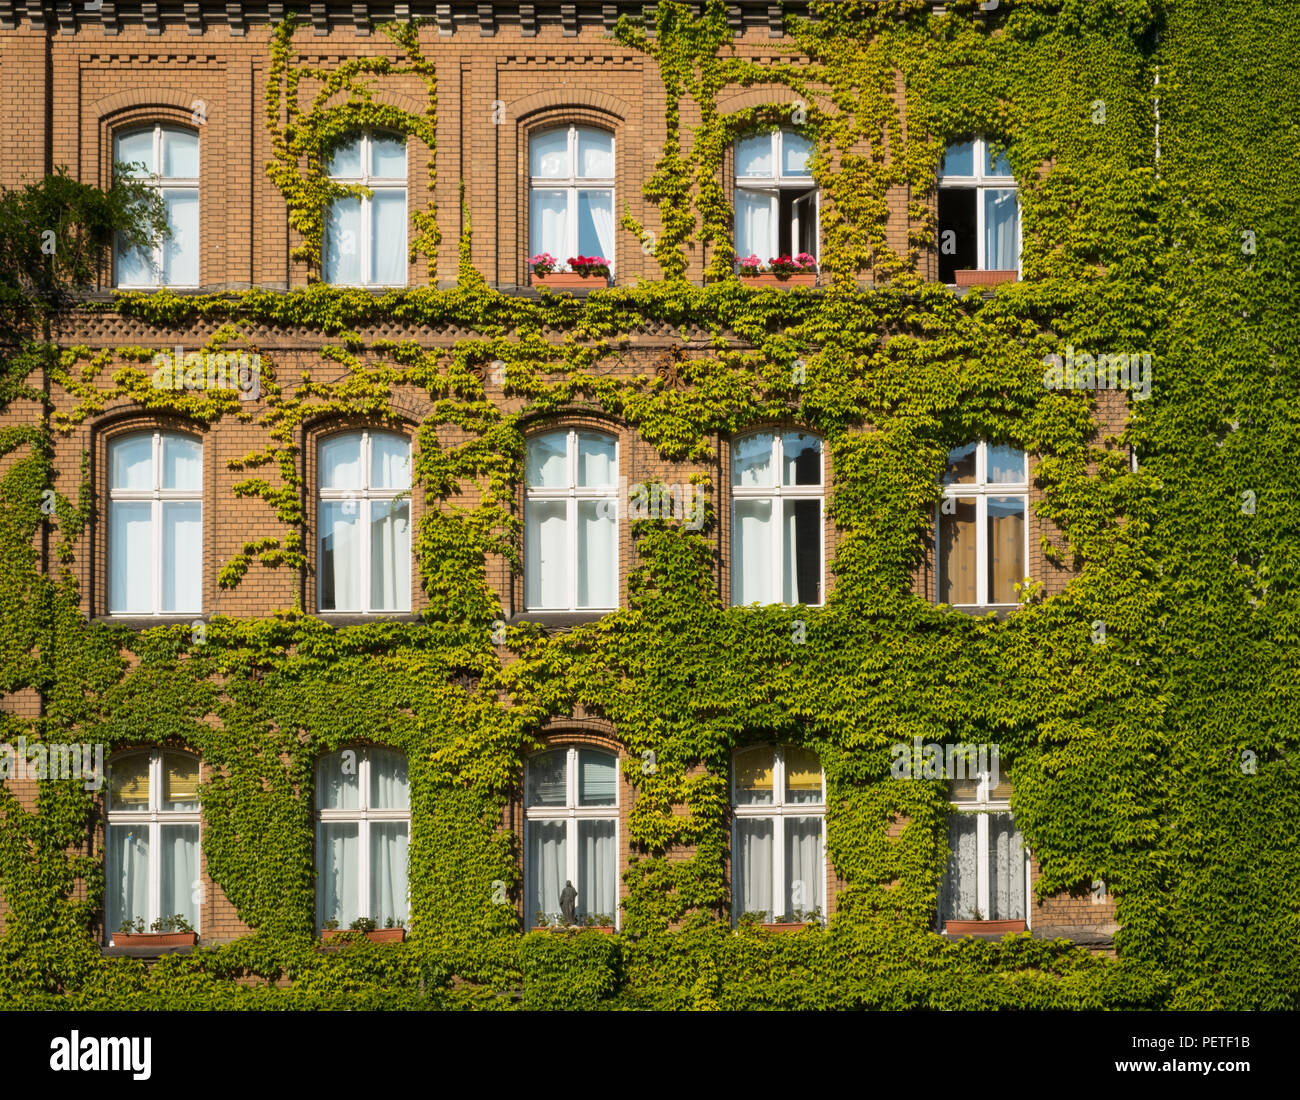 Fassade mit Pflanzen - Haus überwachsen mit Efeu bedeckt - Stockfoto